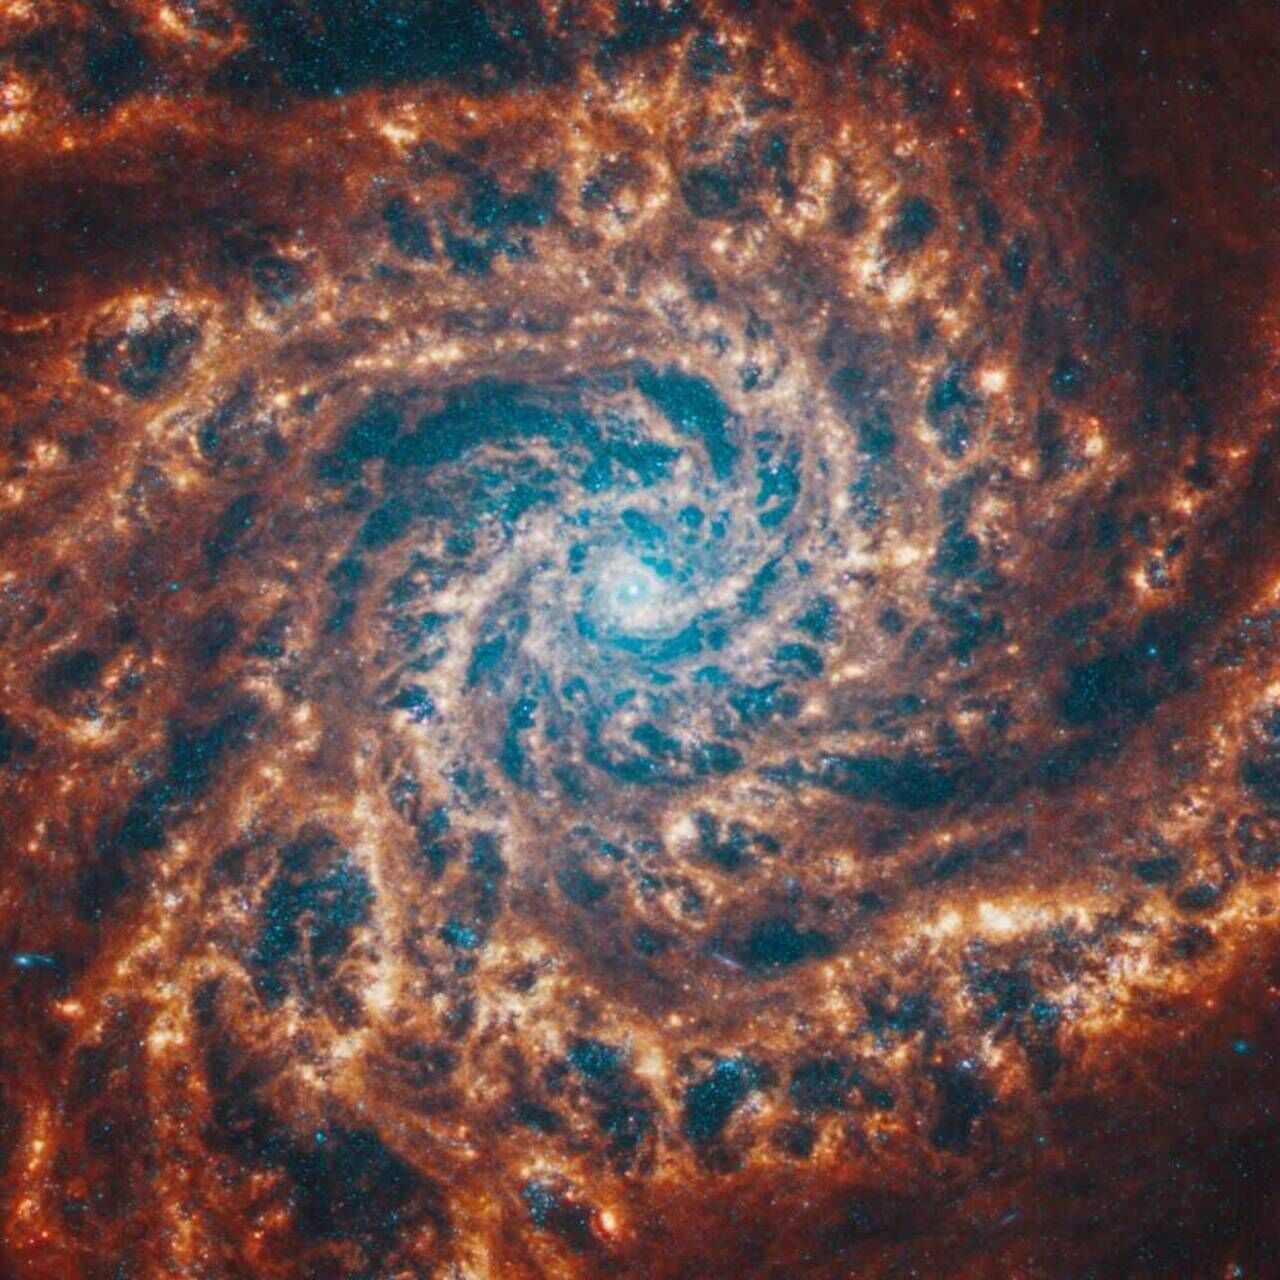 Master in Space Systems: isang spiral galaxy na inilarawan ng James Webb Telescope